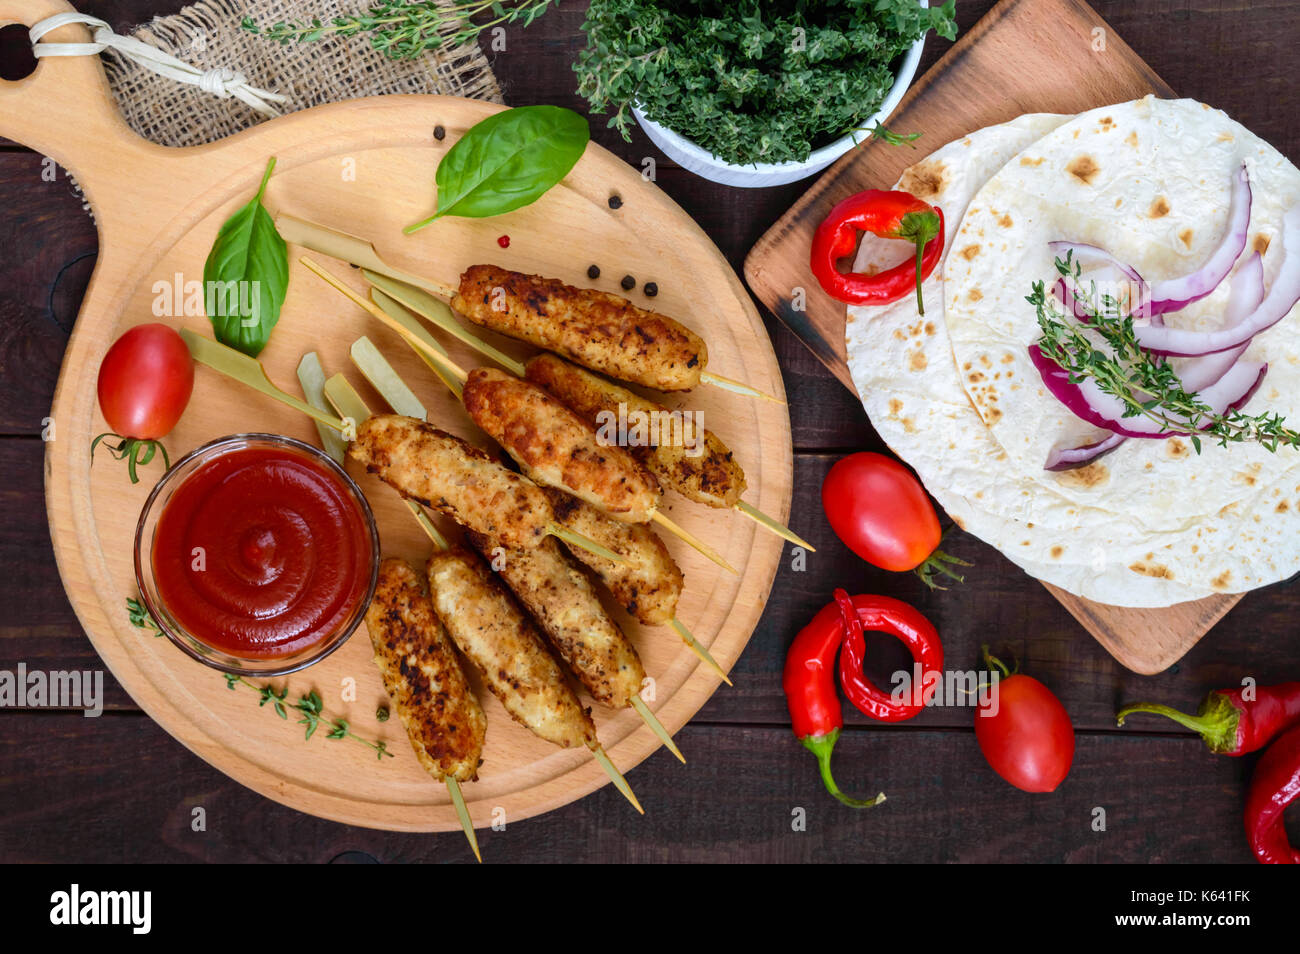 Lula Kebab ist ein traditionelles kaukasisches Gericht. Gehacktes Fleisch mit Spiessen. Mit Lavasch, Tomatensauce auf einem Holzbrett auf dunklem Grund servieren. Stockfoto